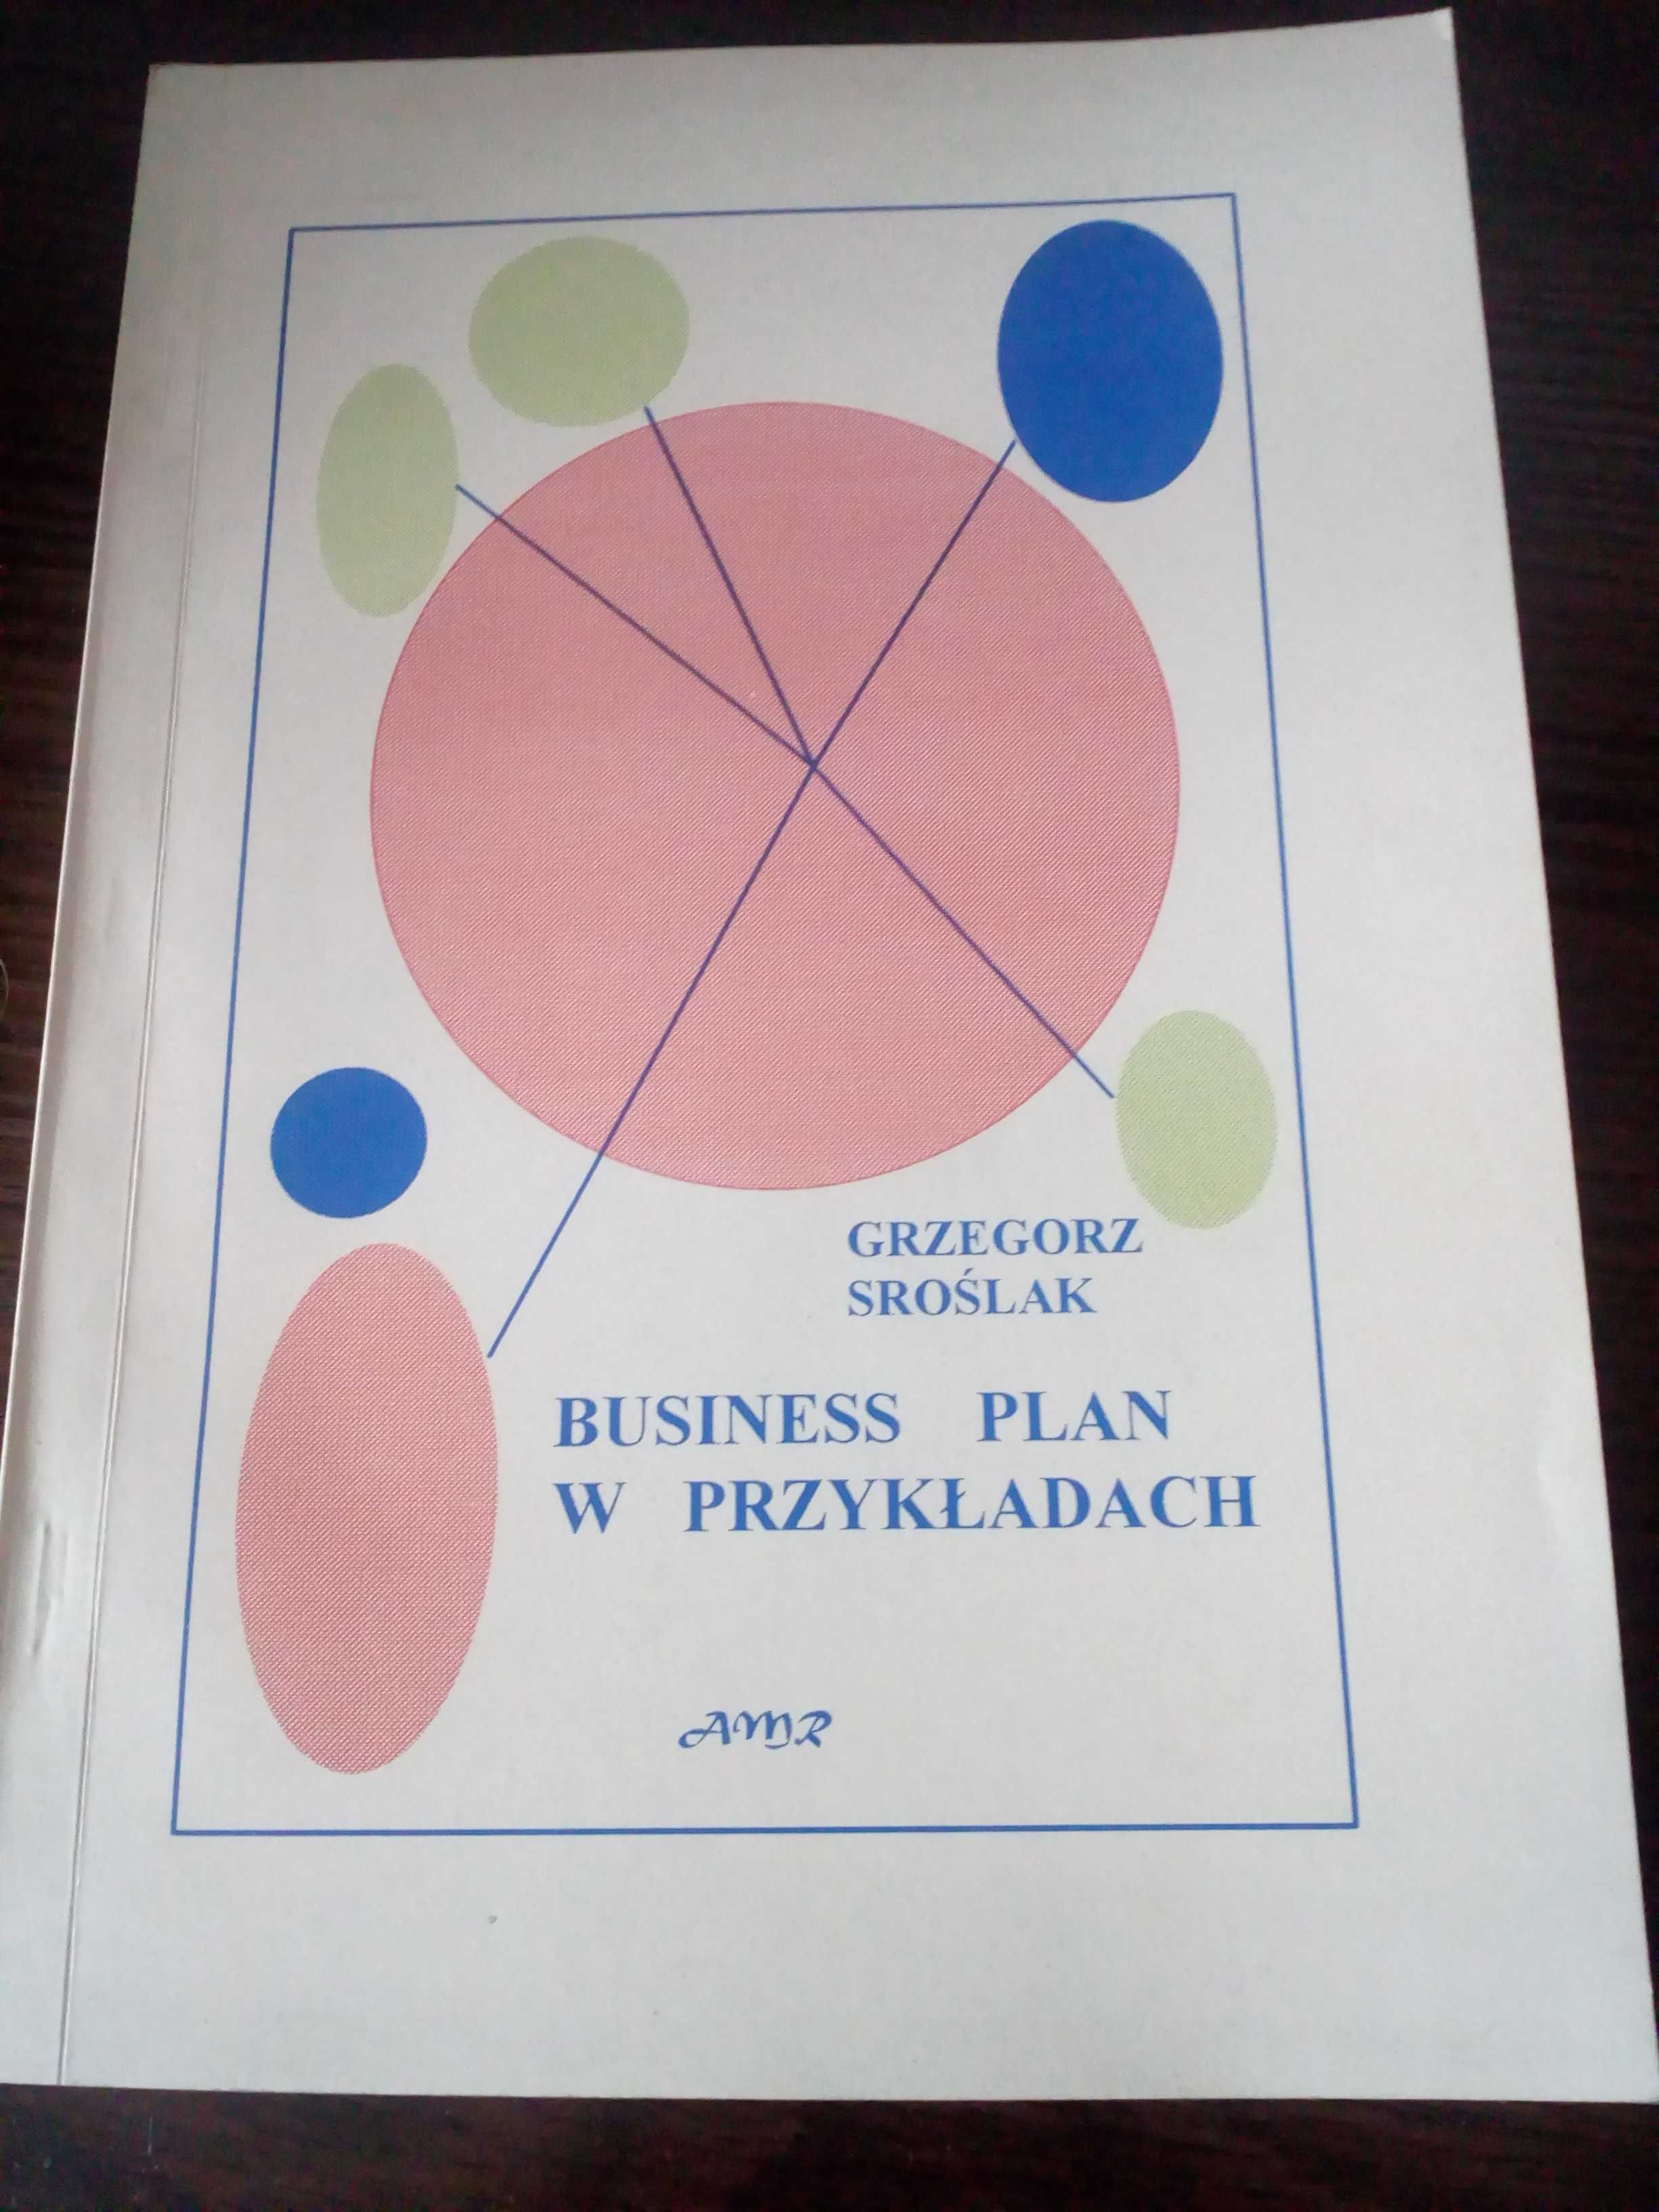 Business plan w przykładach